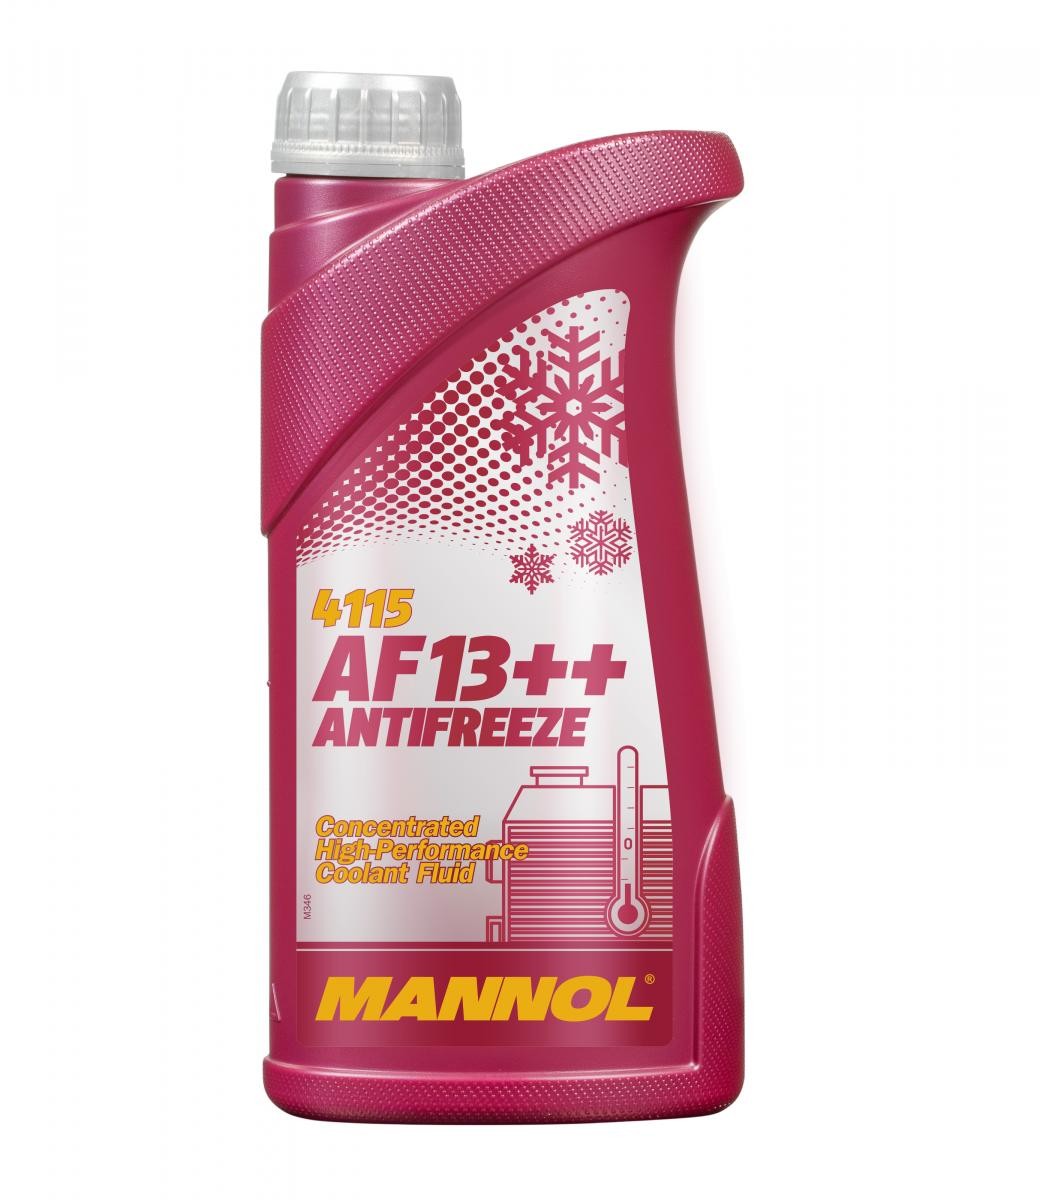 TRAXX SHARK Kühlmittel G12 Rot, 1l, -38(50/50) MANNOL AF13++, High-performance MN4115-1